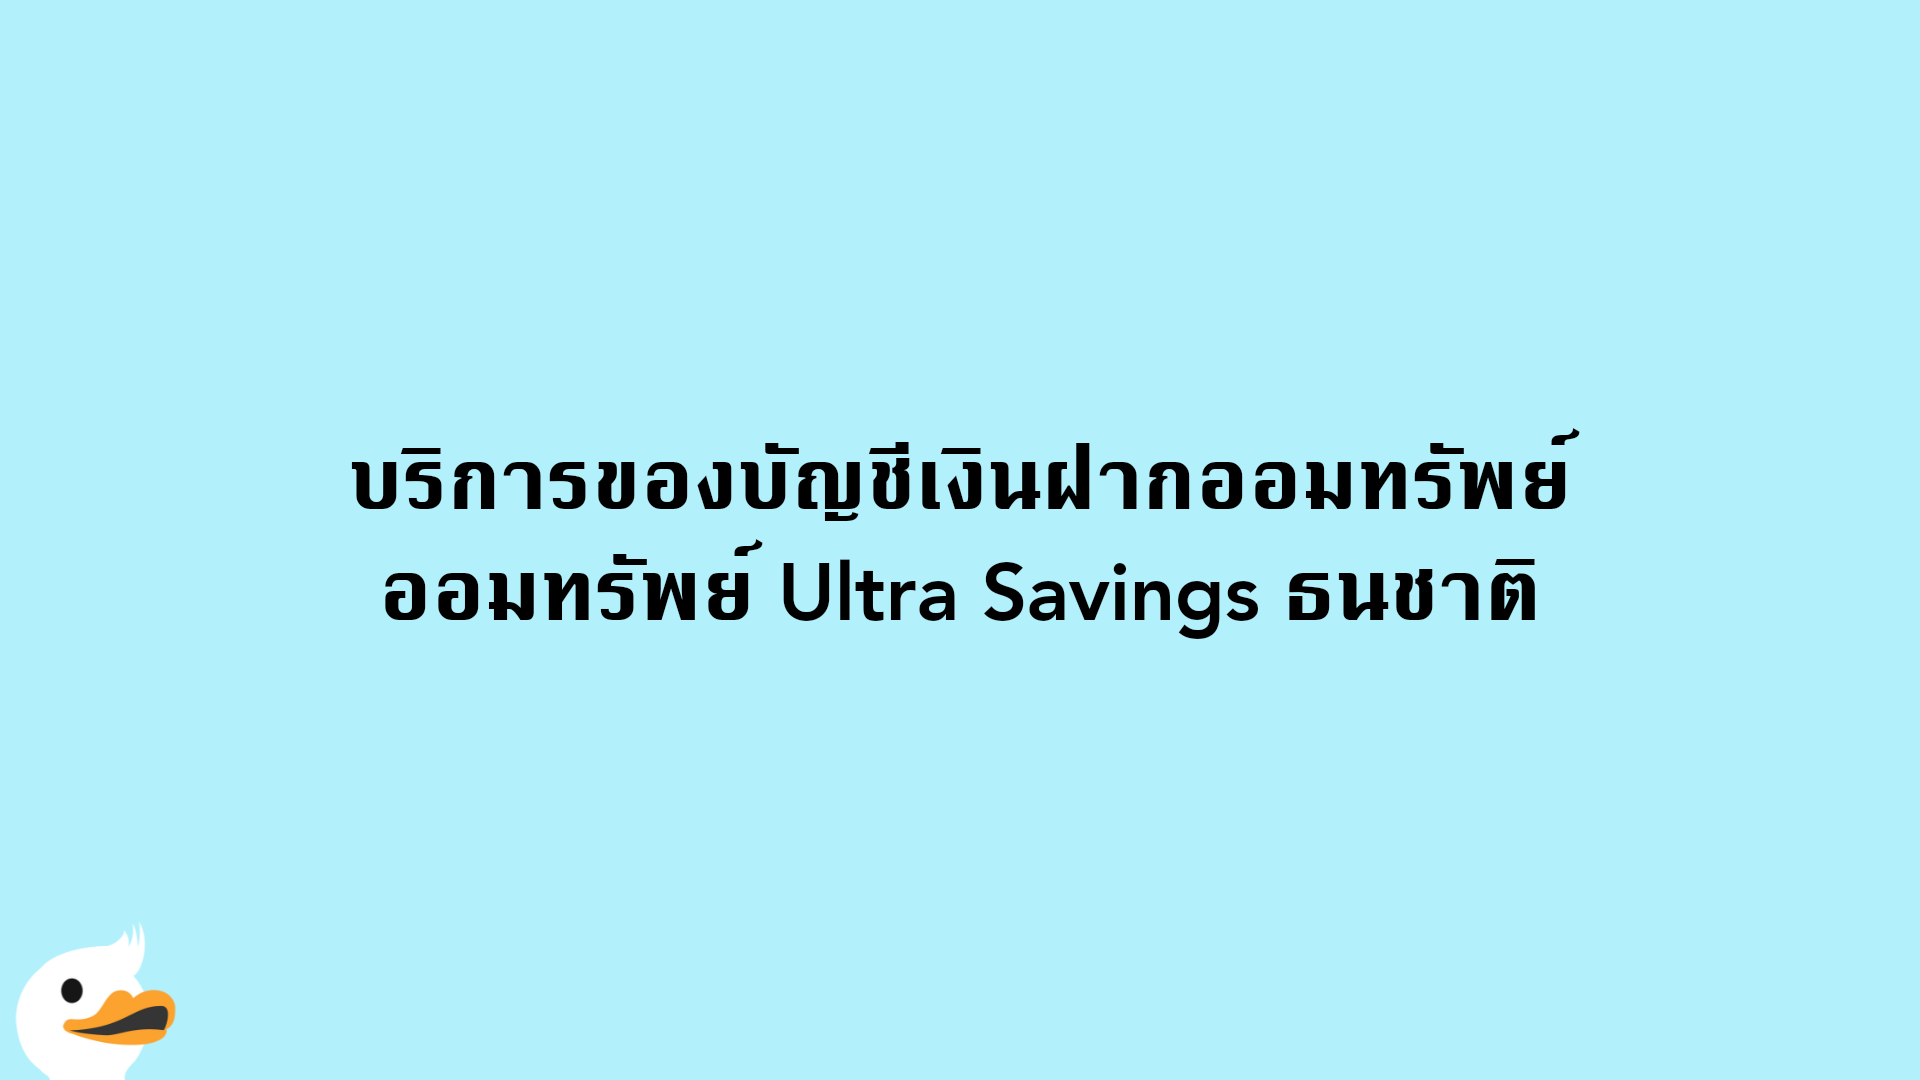 บริการของบัญชีเงินฝากออมทรัพย์ ออมทรัพย์ Ultra Savings ธนชาติ